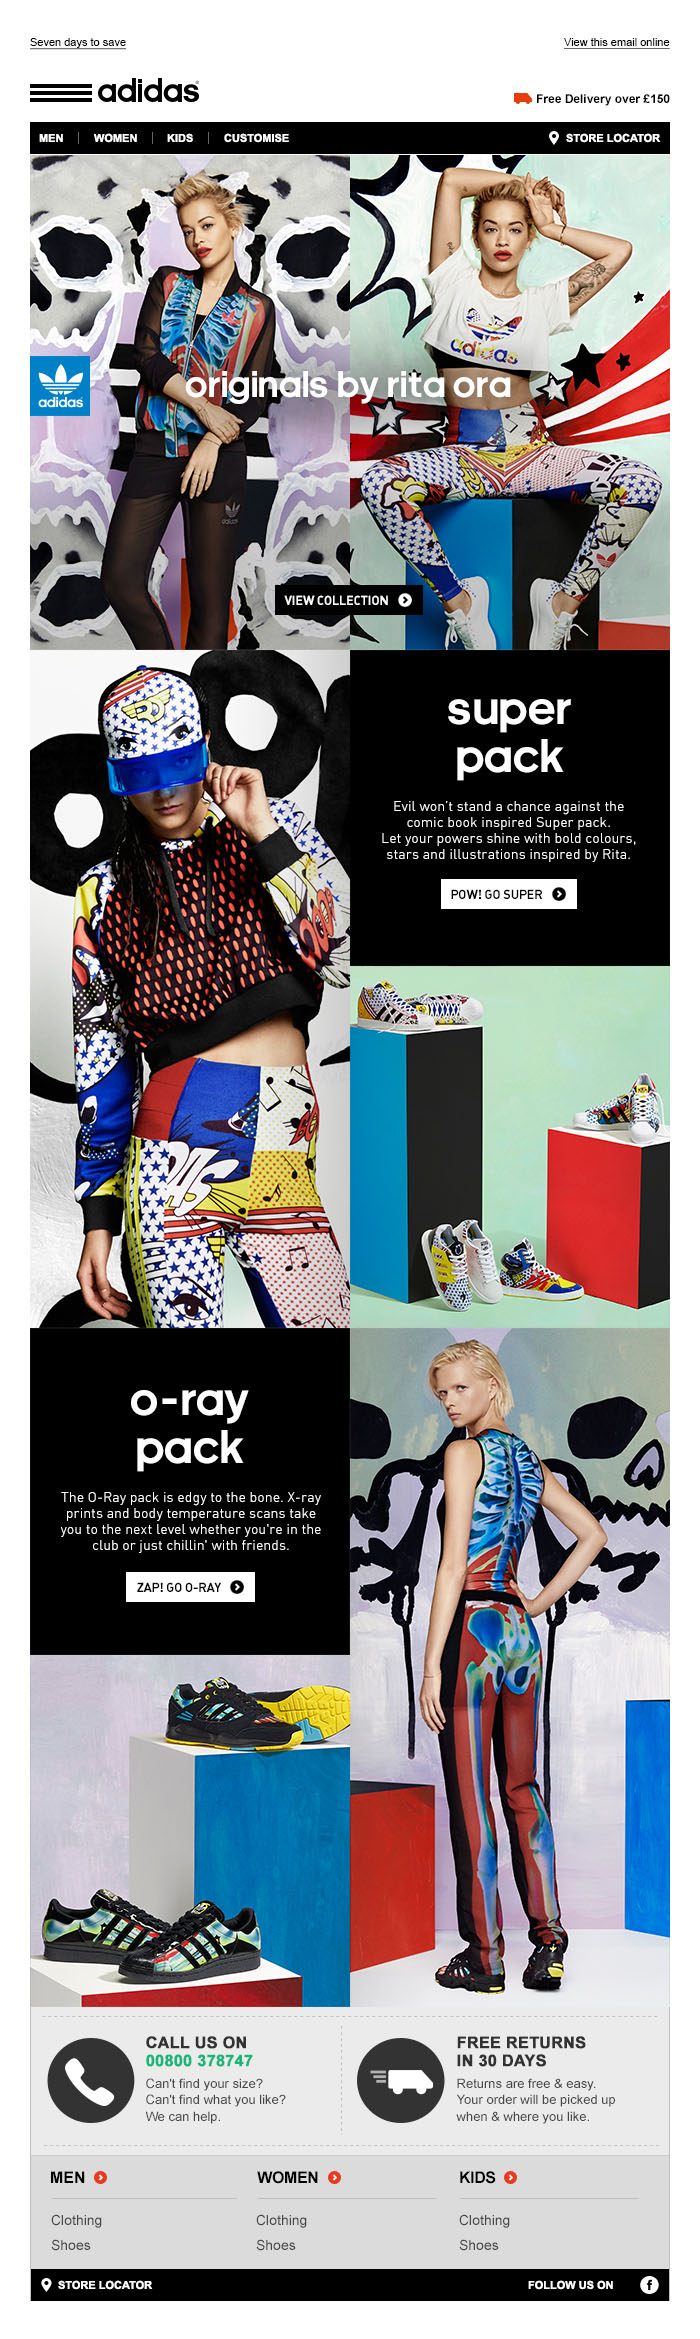 adidas Originals Rita Ora - Tim Tayyar, freelance copywriter